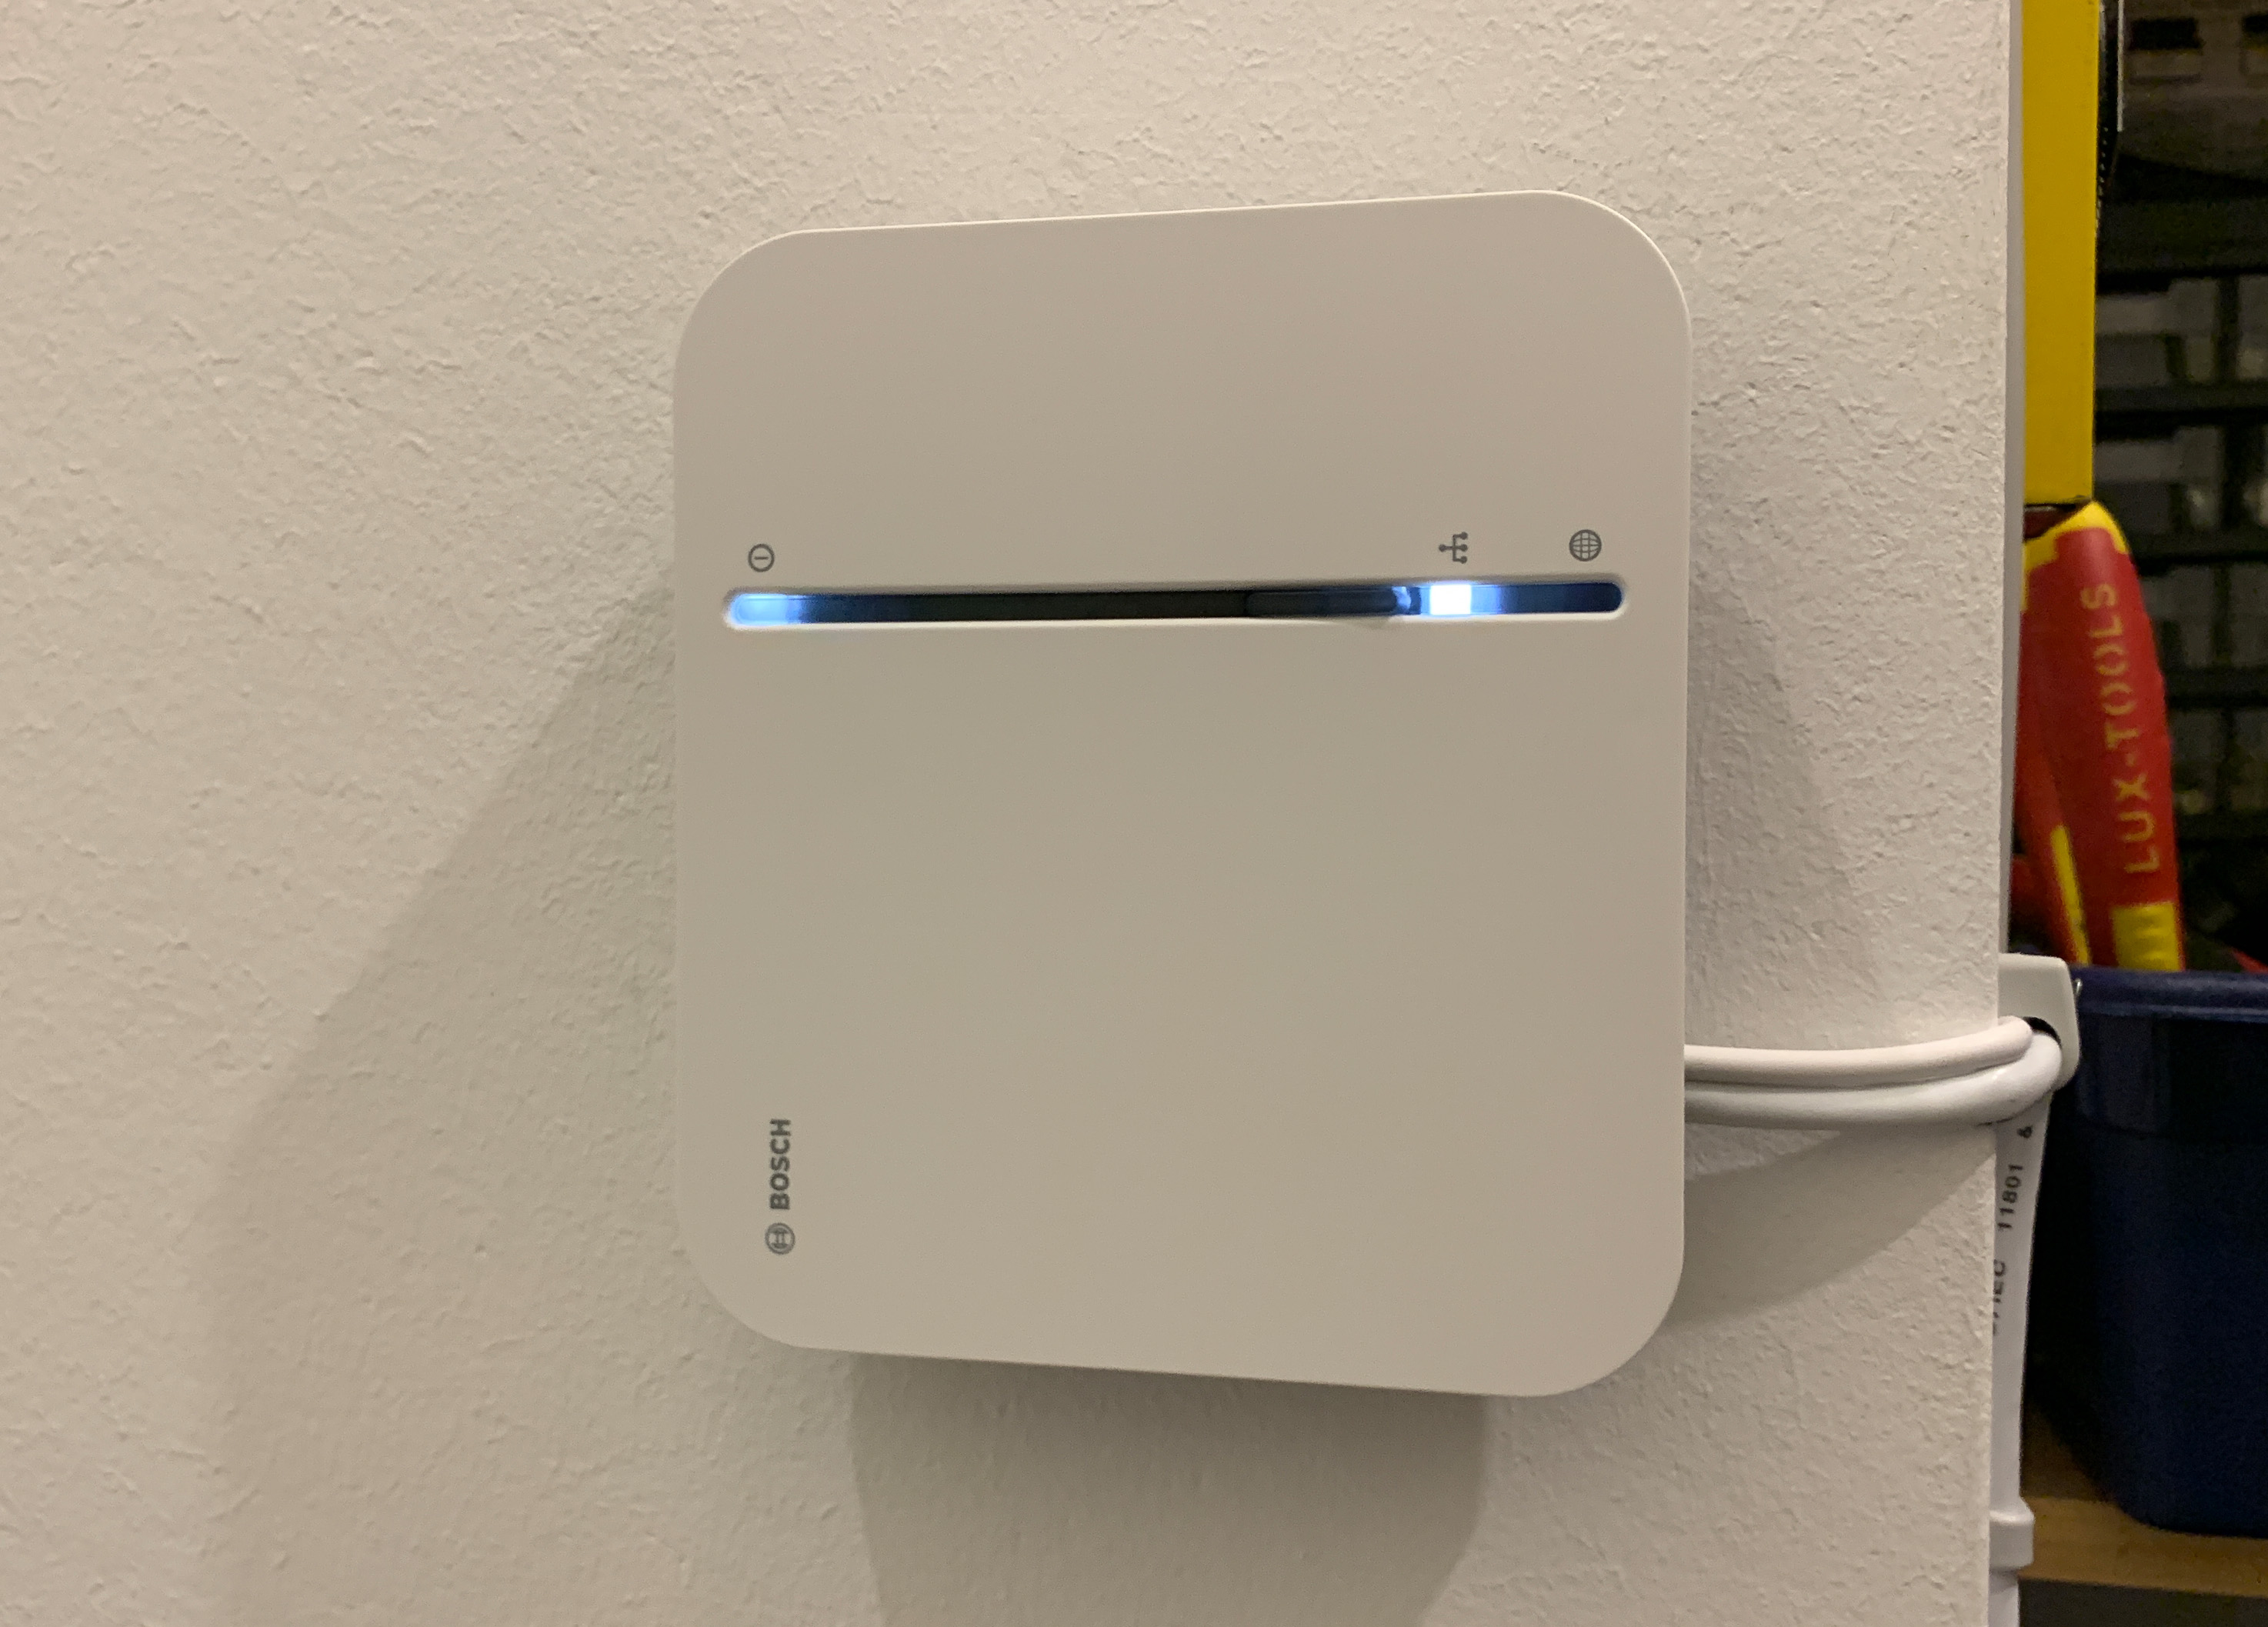 Bosch Smart Home im Test - Das vielleicht einfachste Smart Home System